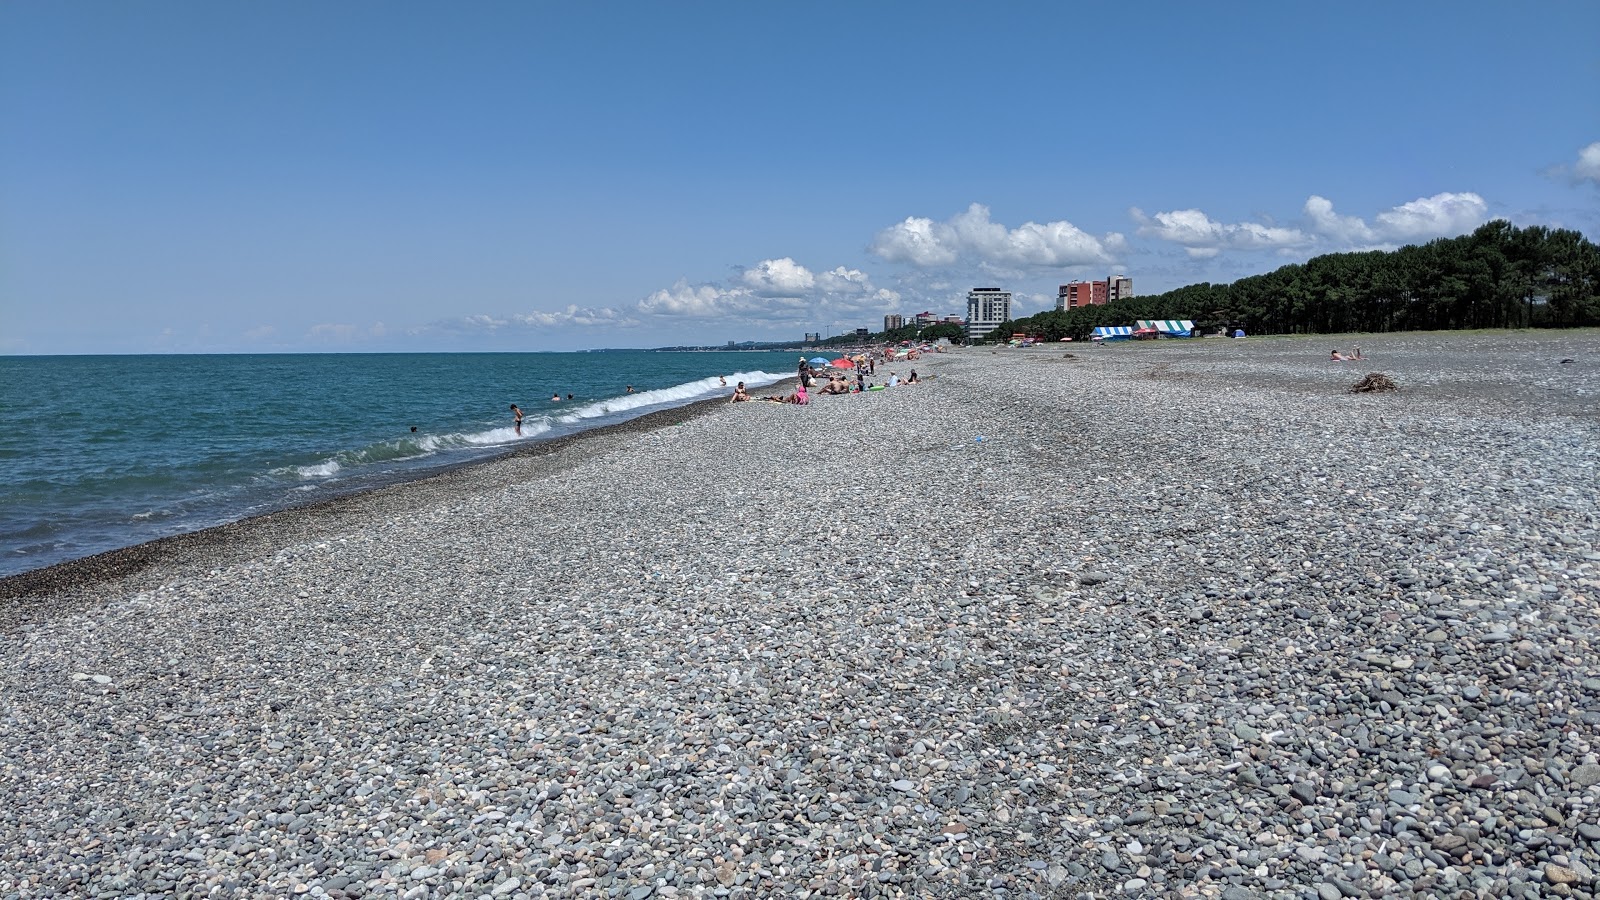 Kobuleti beach'in fotoğrafı gri çakıl taşı yüzey ile